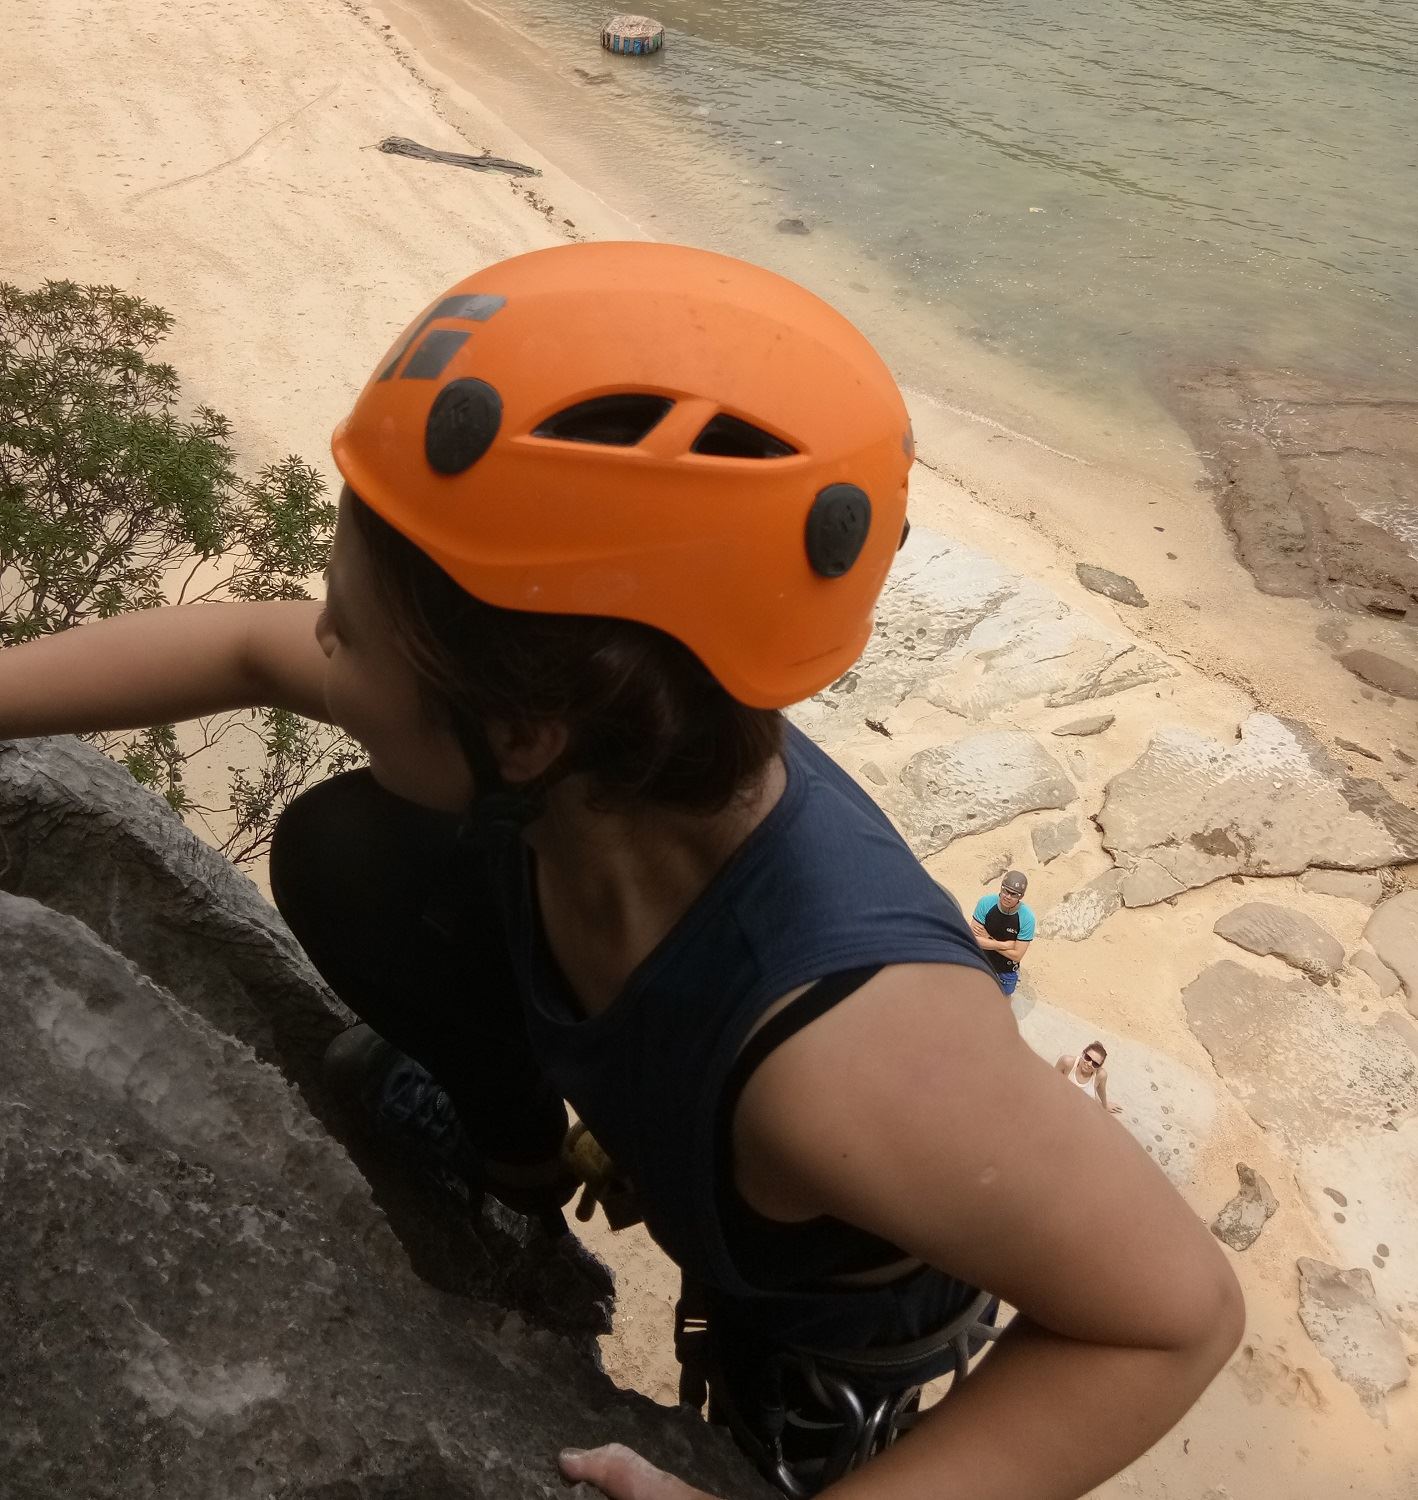 Rock climbing on Mit beach 9